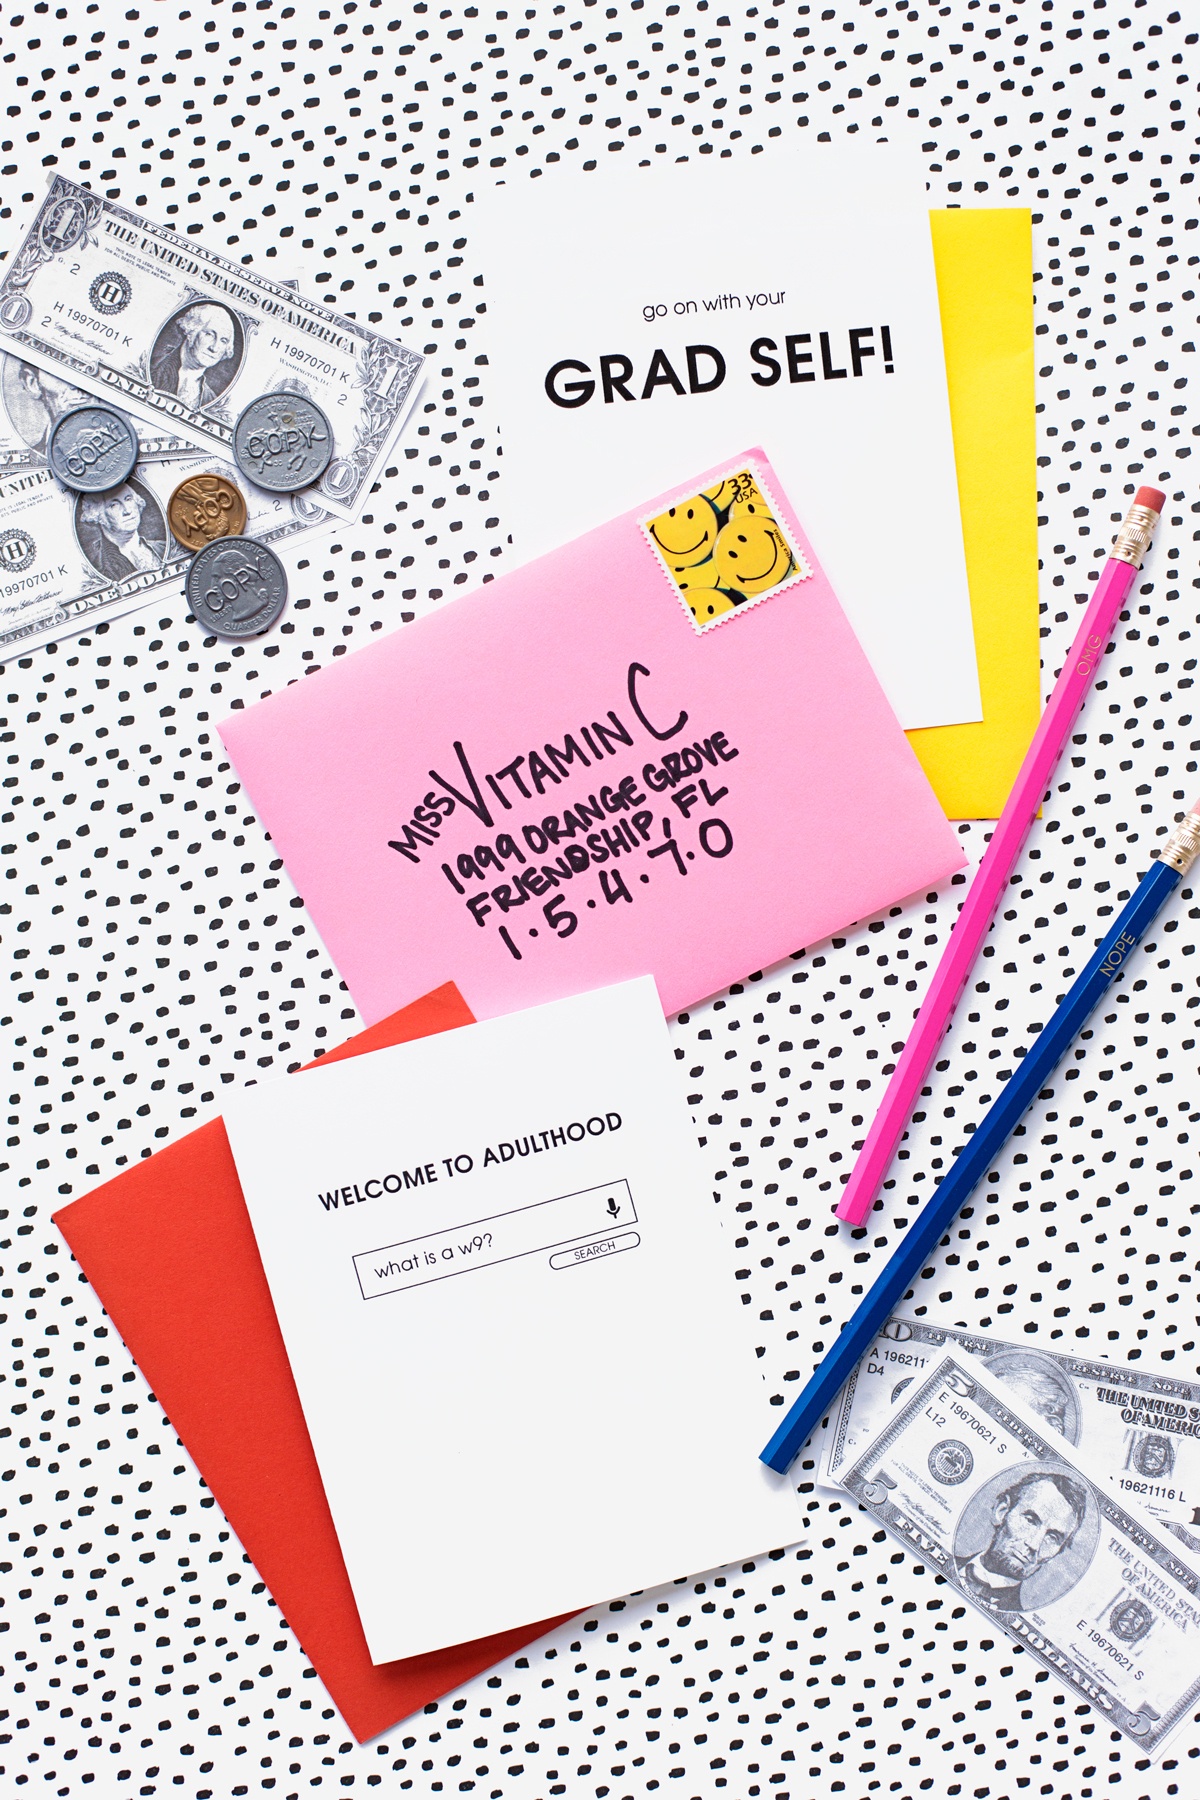 Welcome To Adulthood: Free Printable Graduation Cards - Studio Diy - Free Printable Welcome Cards